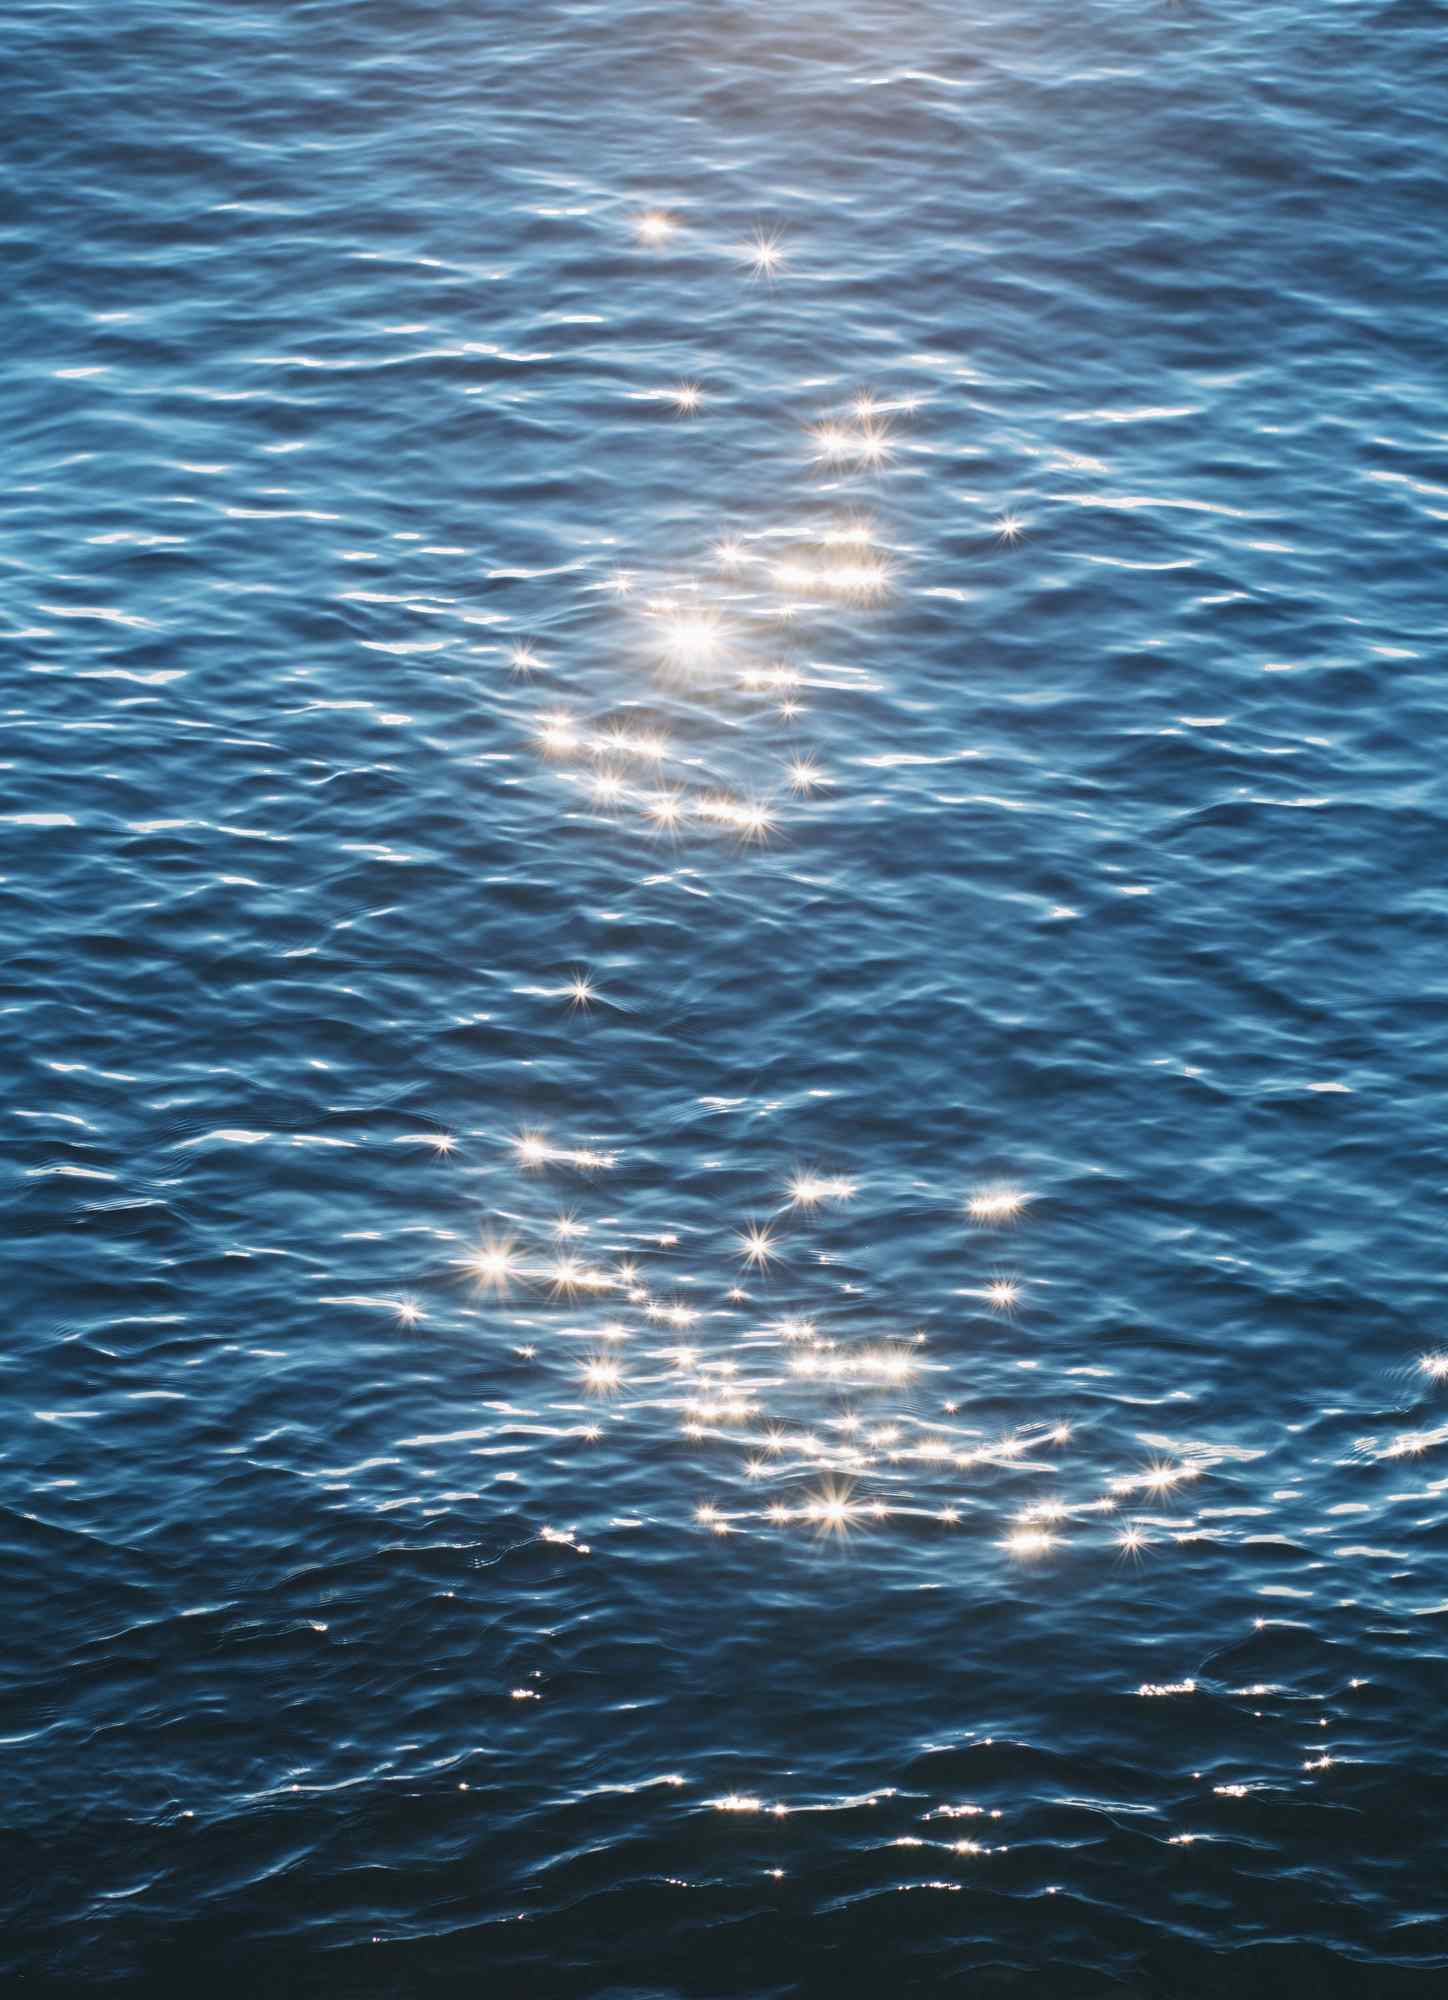 贝加尔湖清澈湖面图片手机壁纸